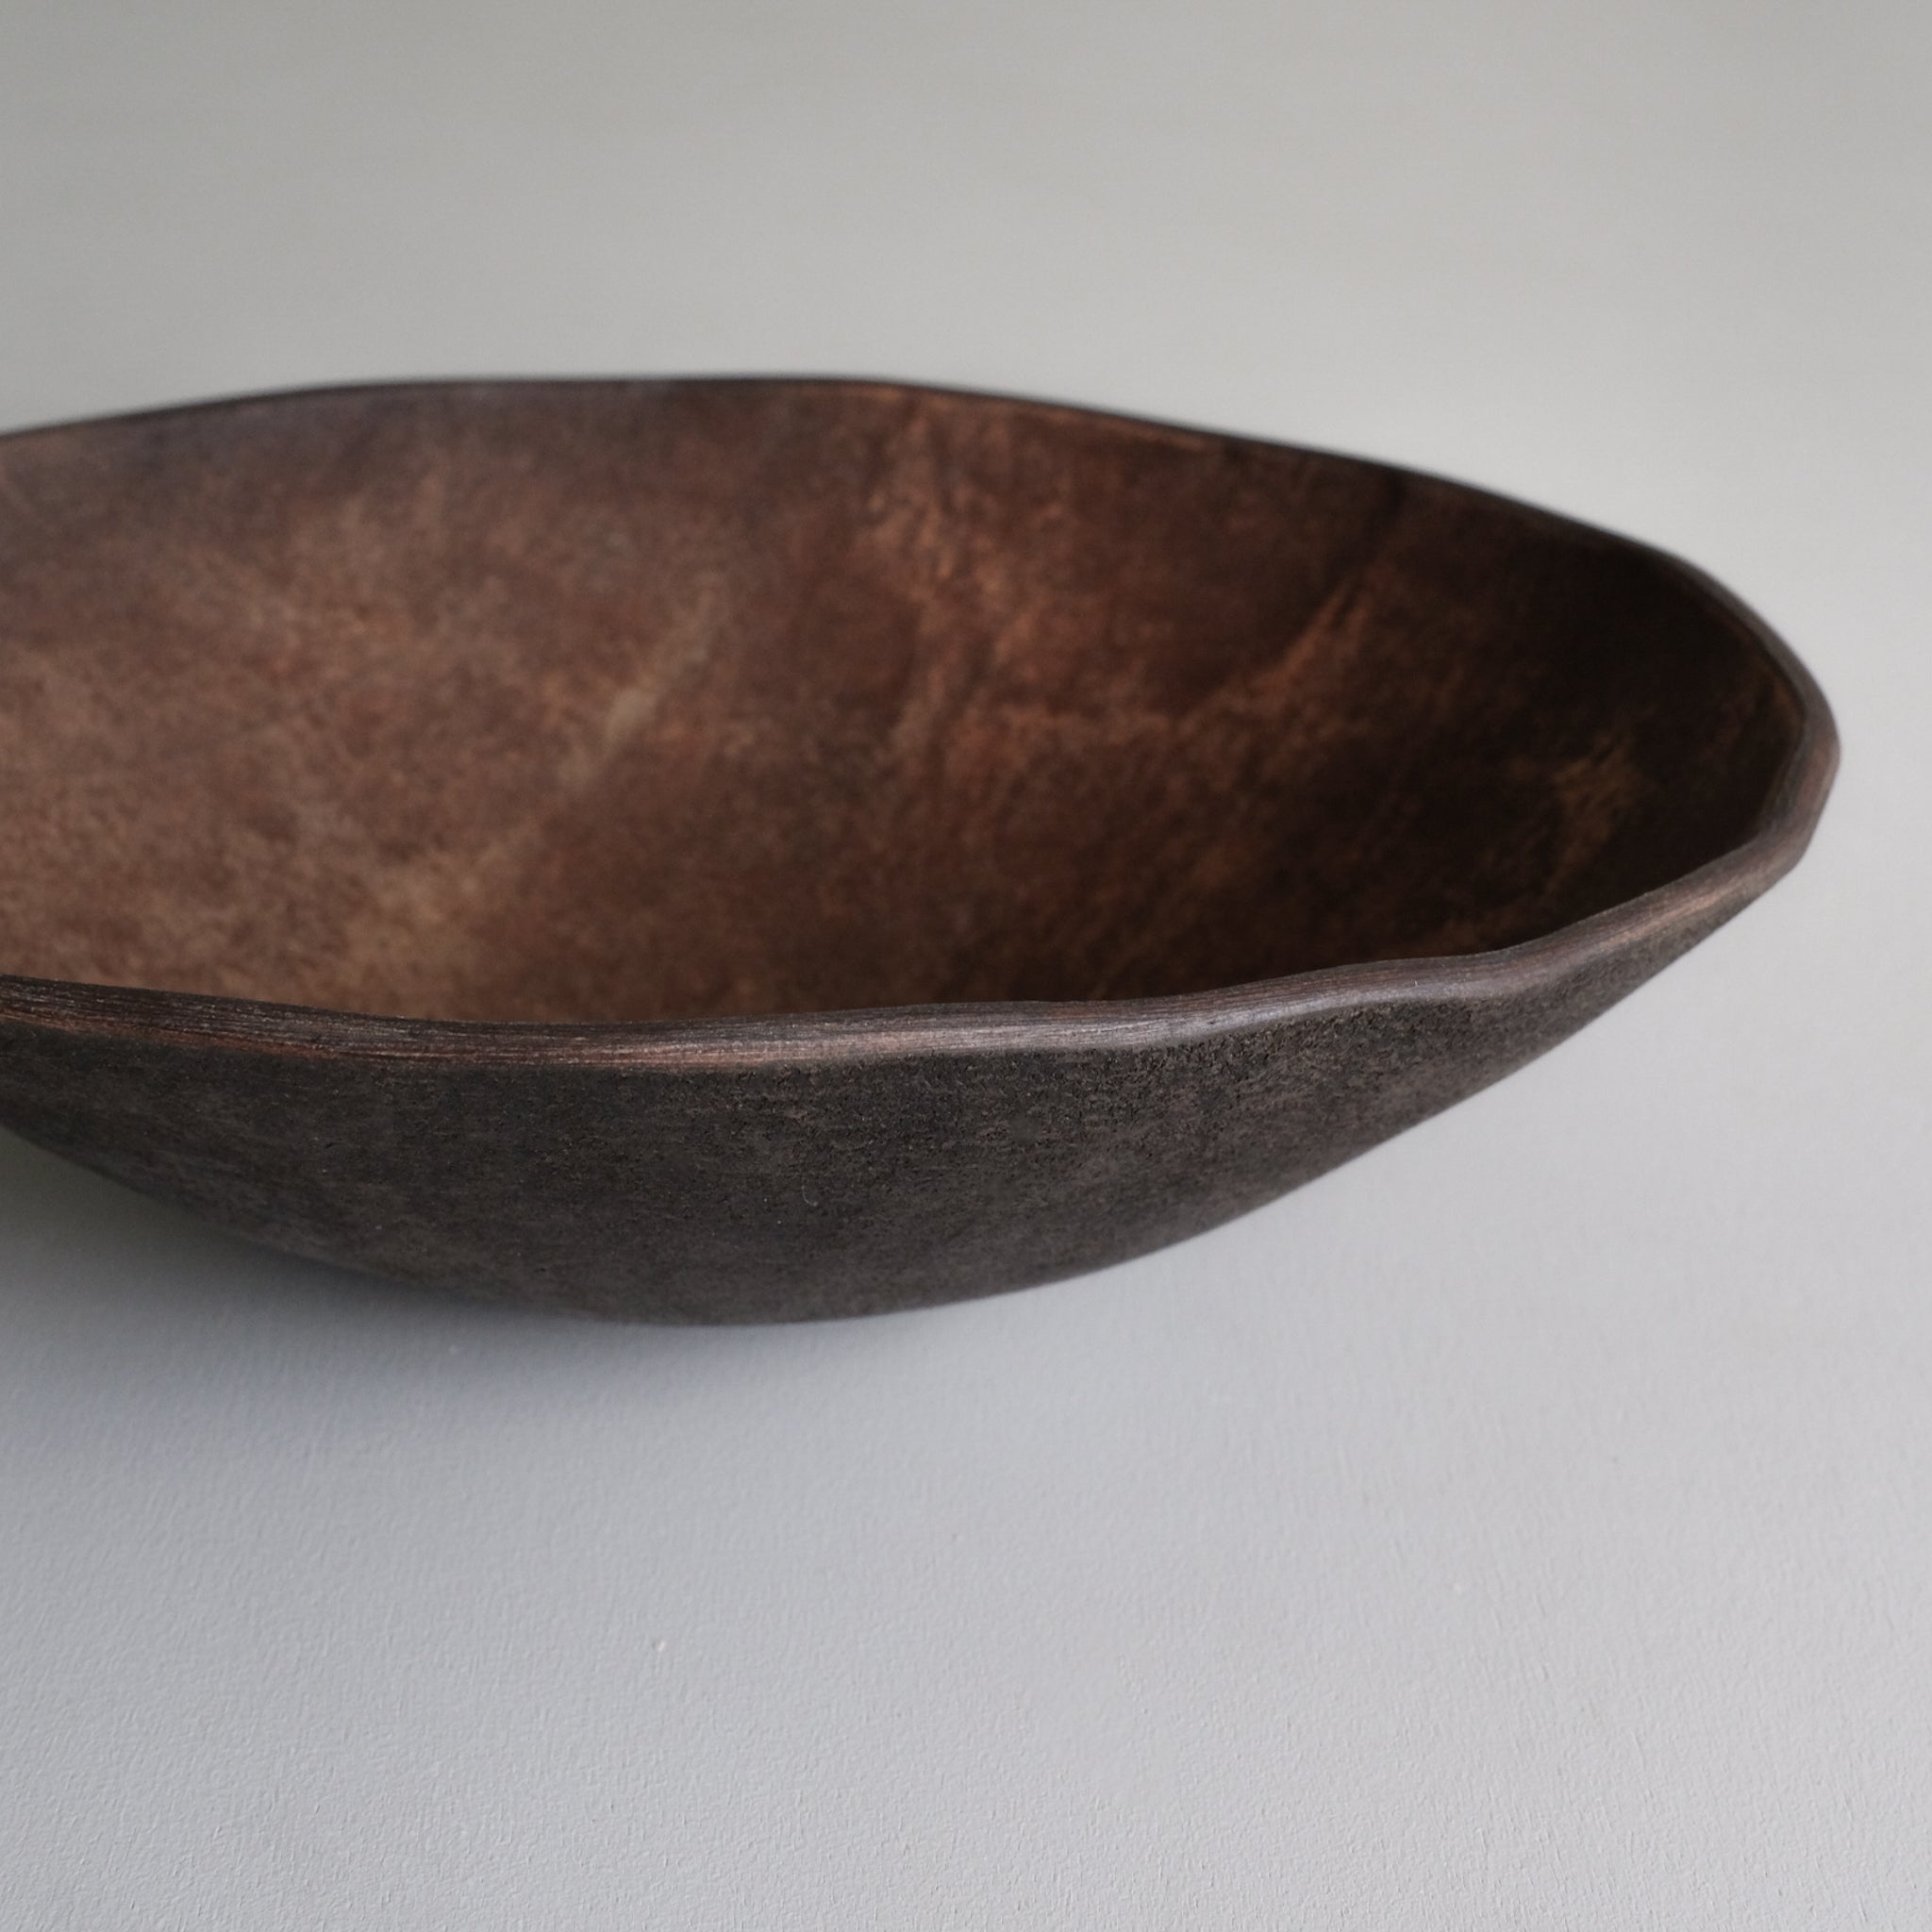 上治良充  ボウル S   Yoshimichi Joji  Leather bowl S-size